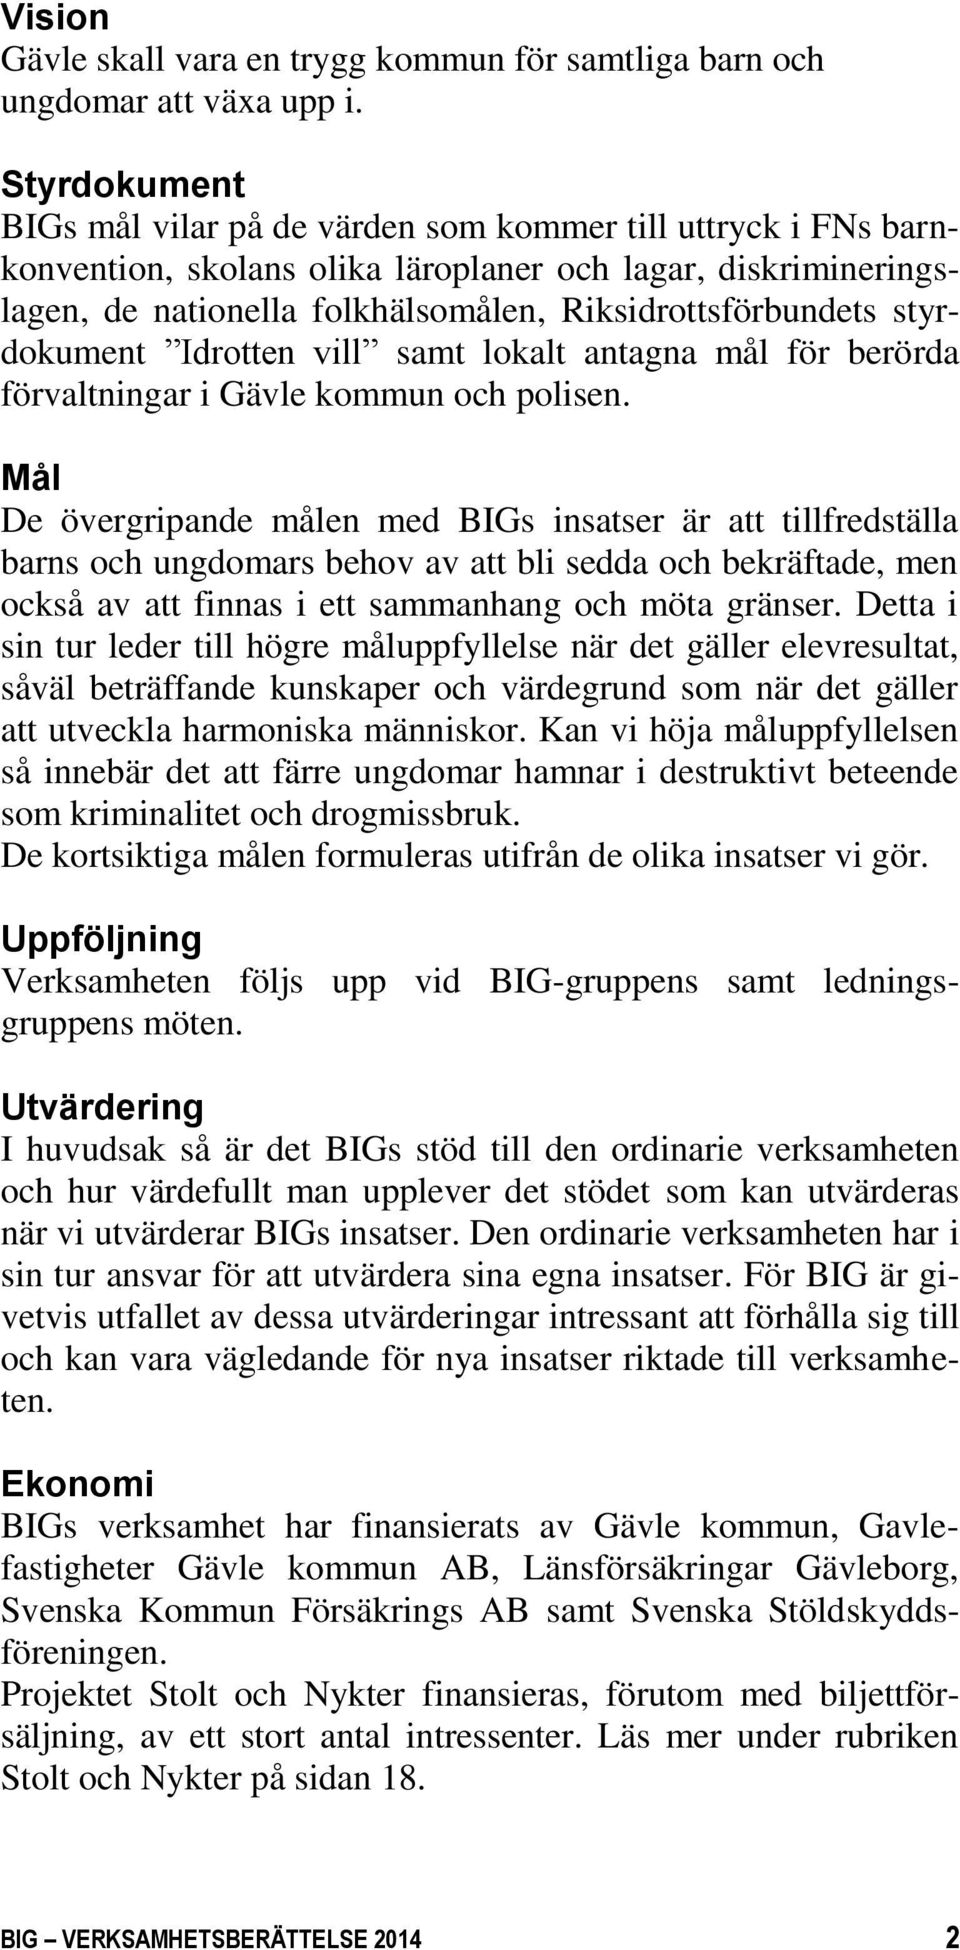 styrdokument Idrotten vill samt lokalt antagna mål för berörda förvaltningar i Gävle kommun och polisen.